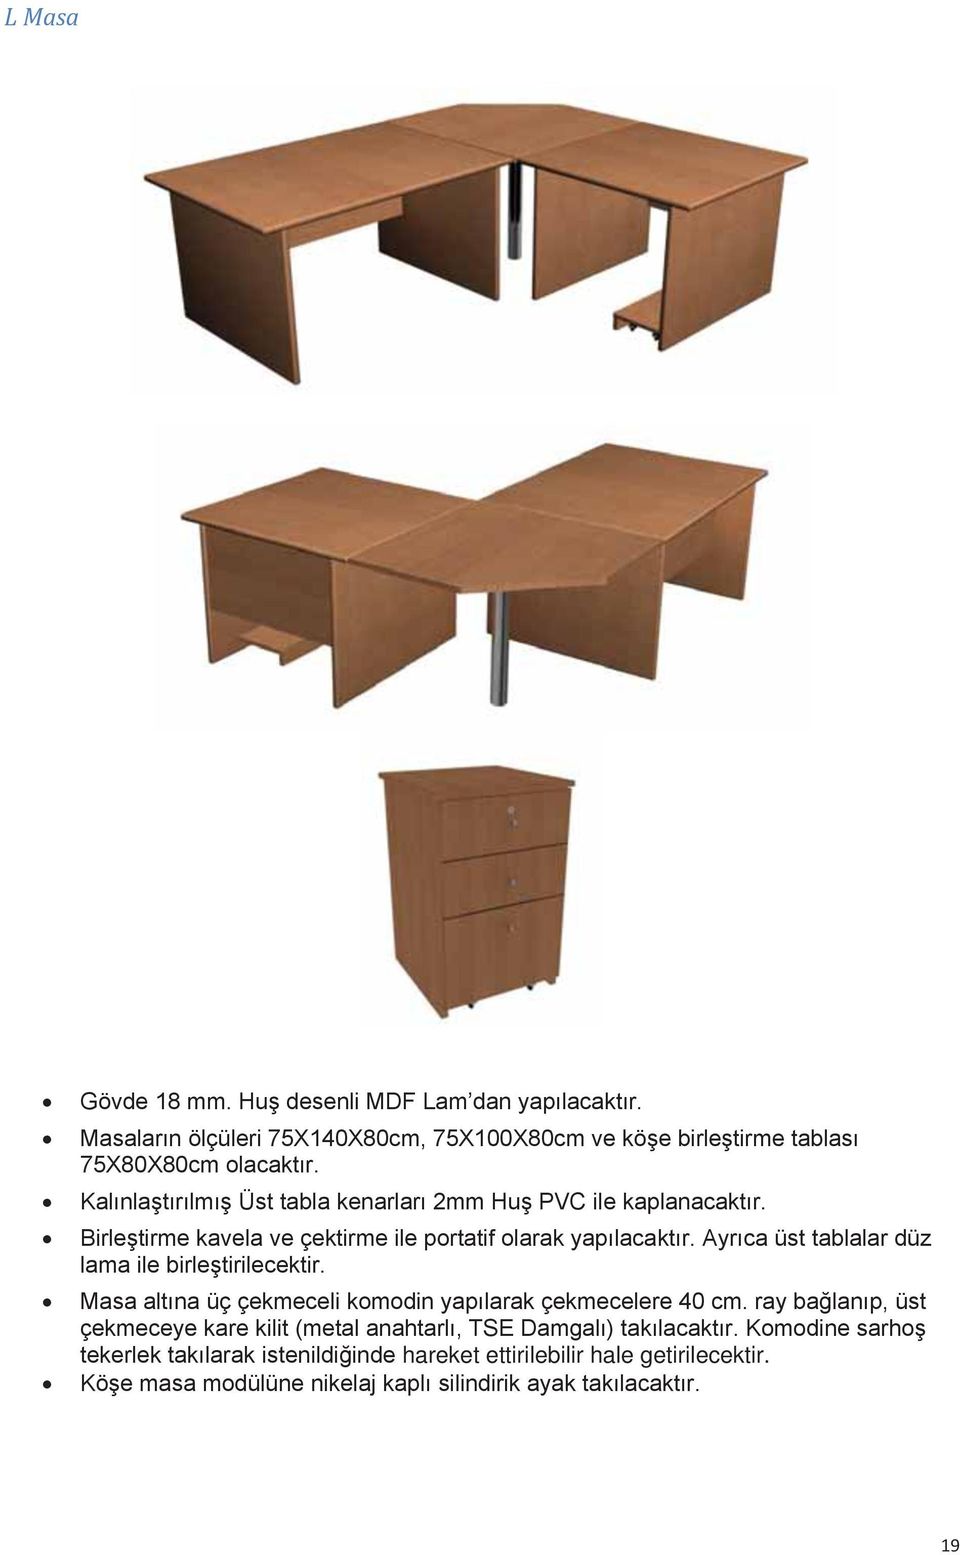 Ayrıca üst tablalar düz lama ile birleştirilecektir. Masa altına üç çekmeceli komodin yapılarak çekmecelere 40 cm.